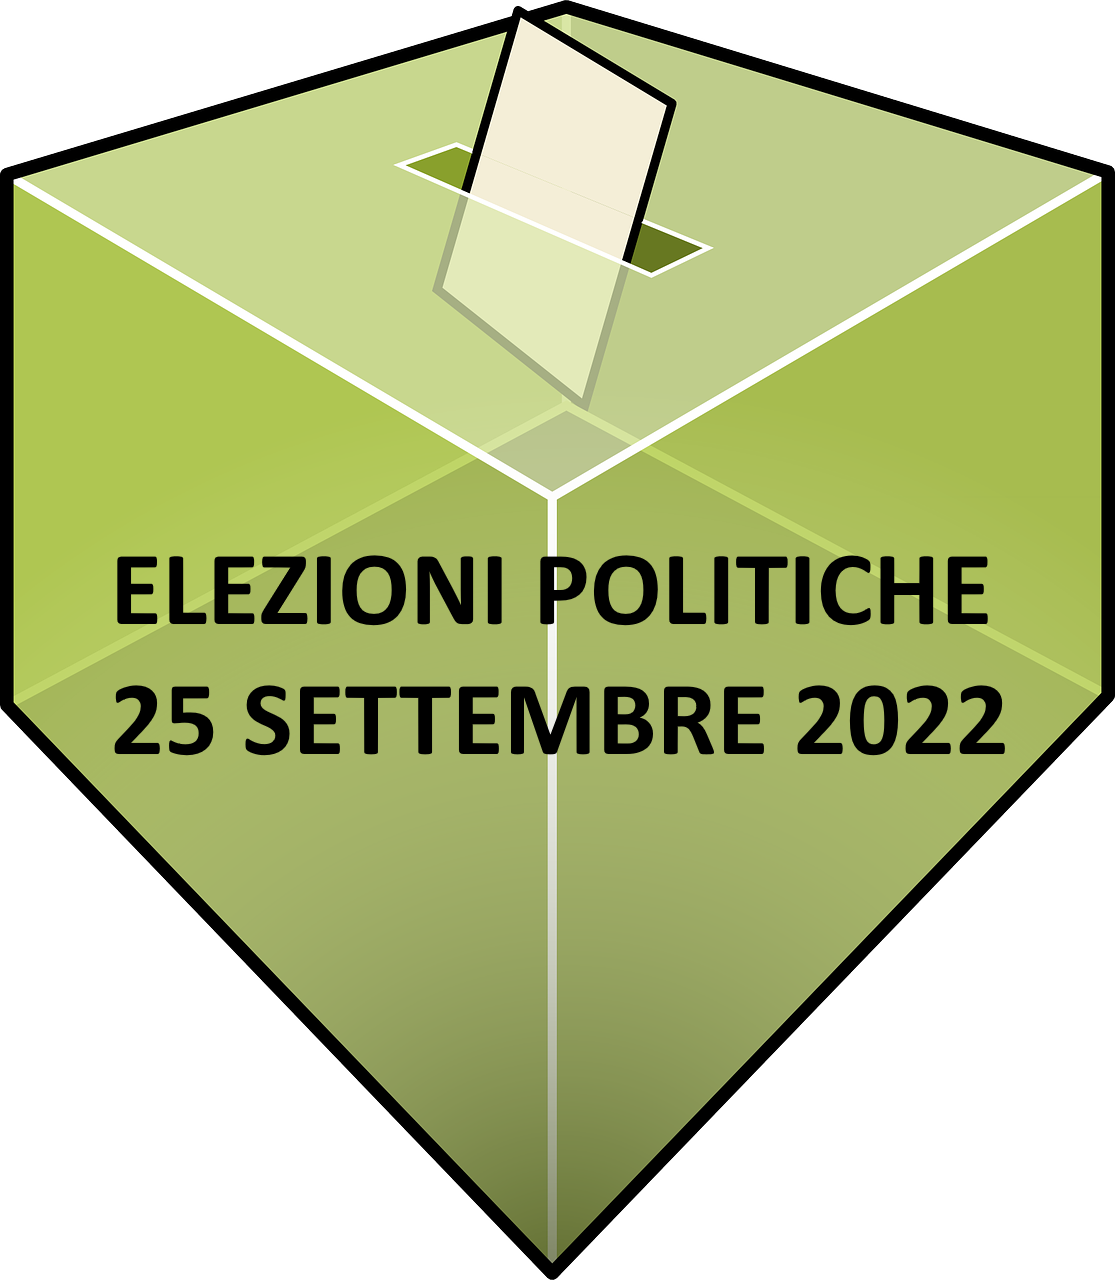 Elezioni politiche 2022 - Apertura uffici comunali per il rilascio tessere